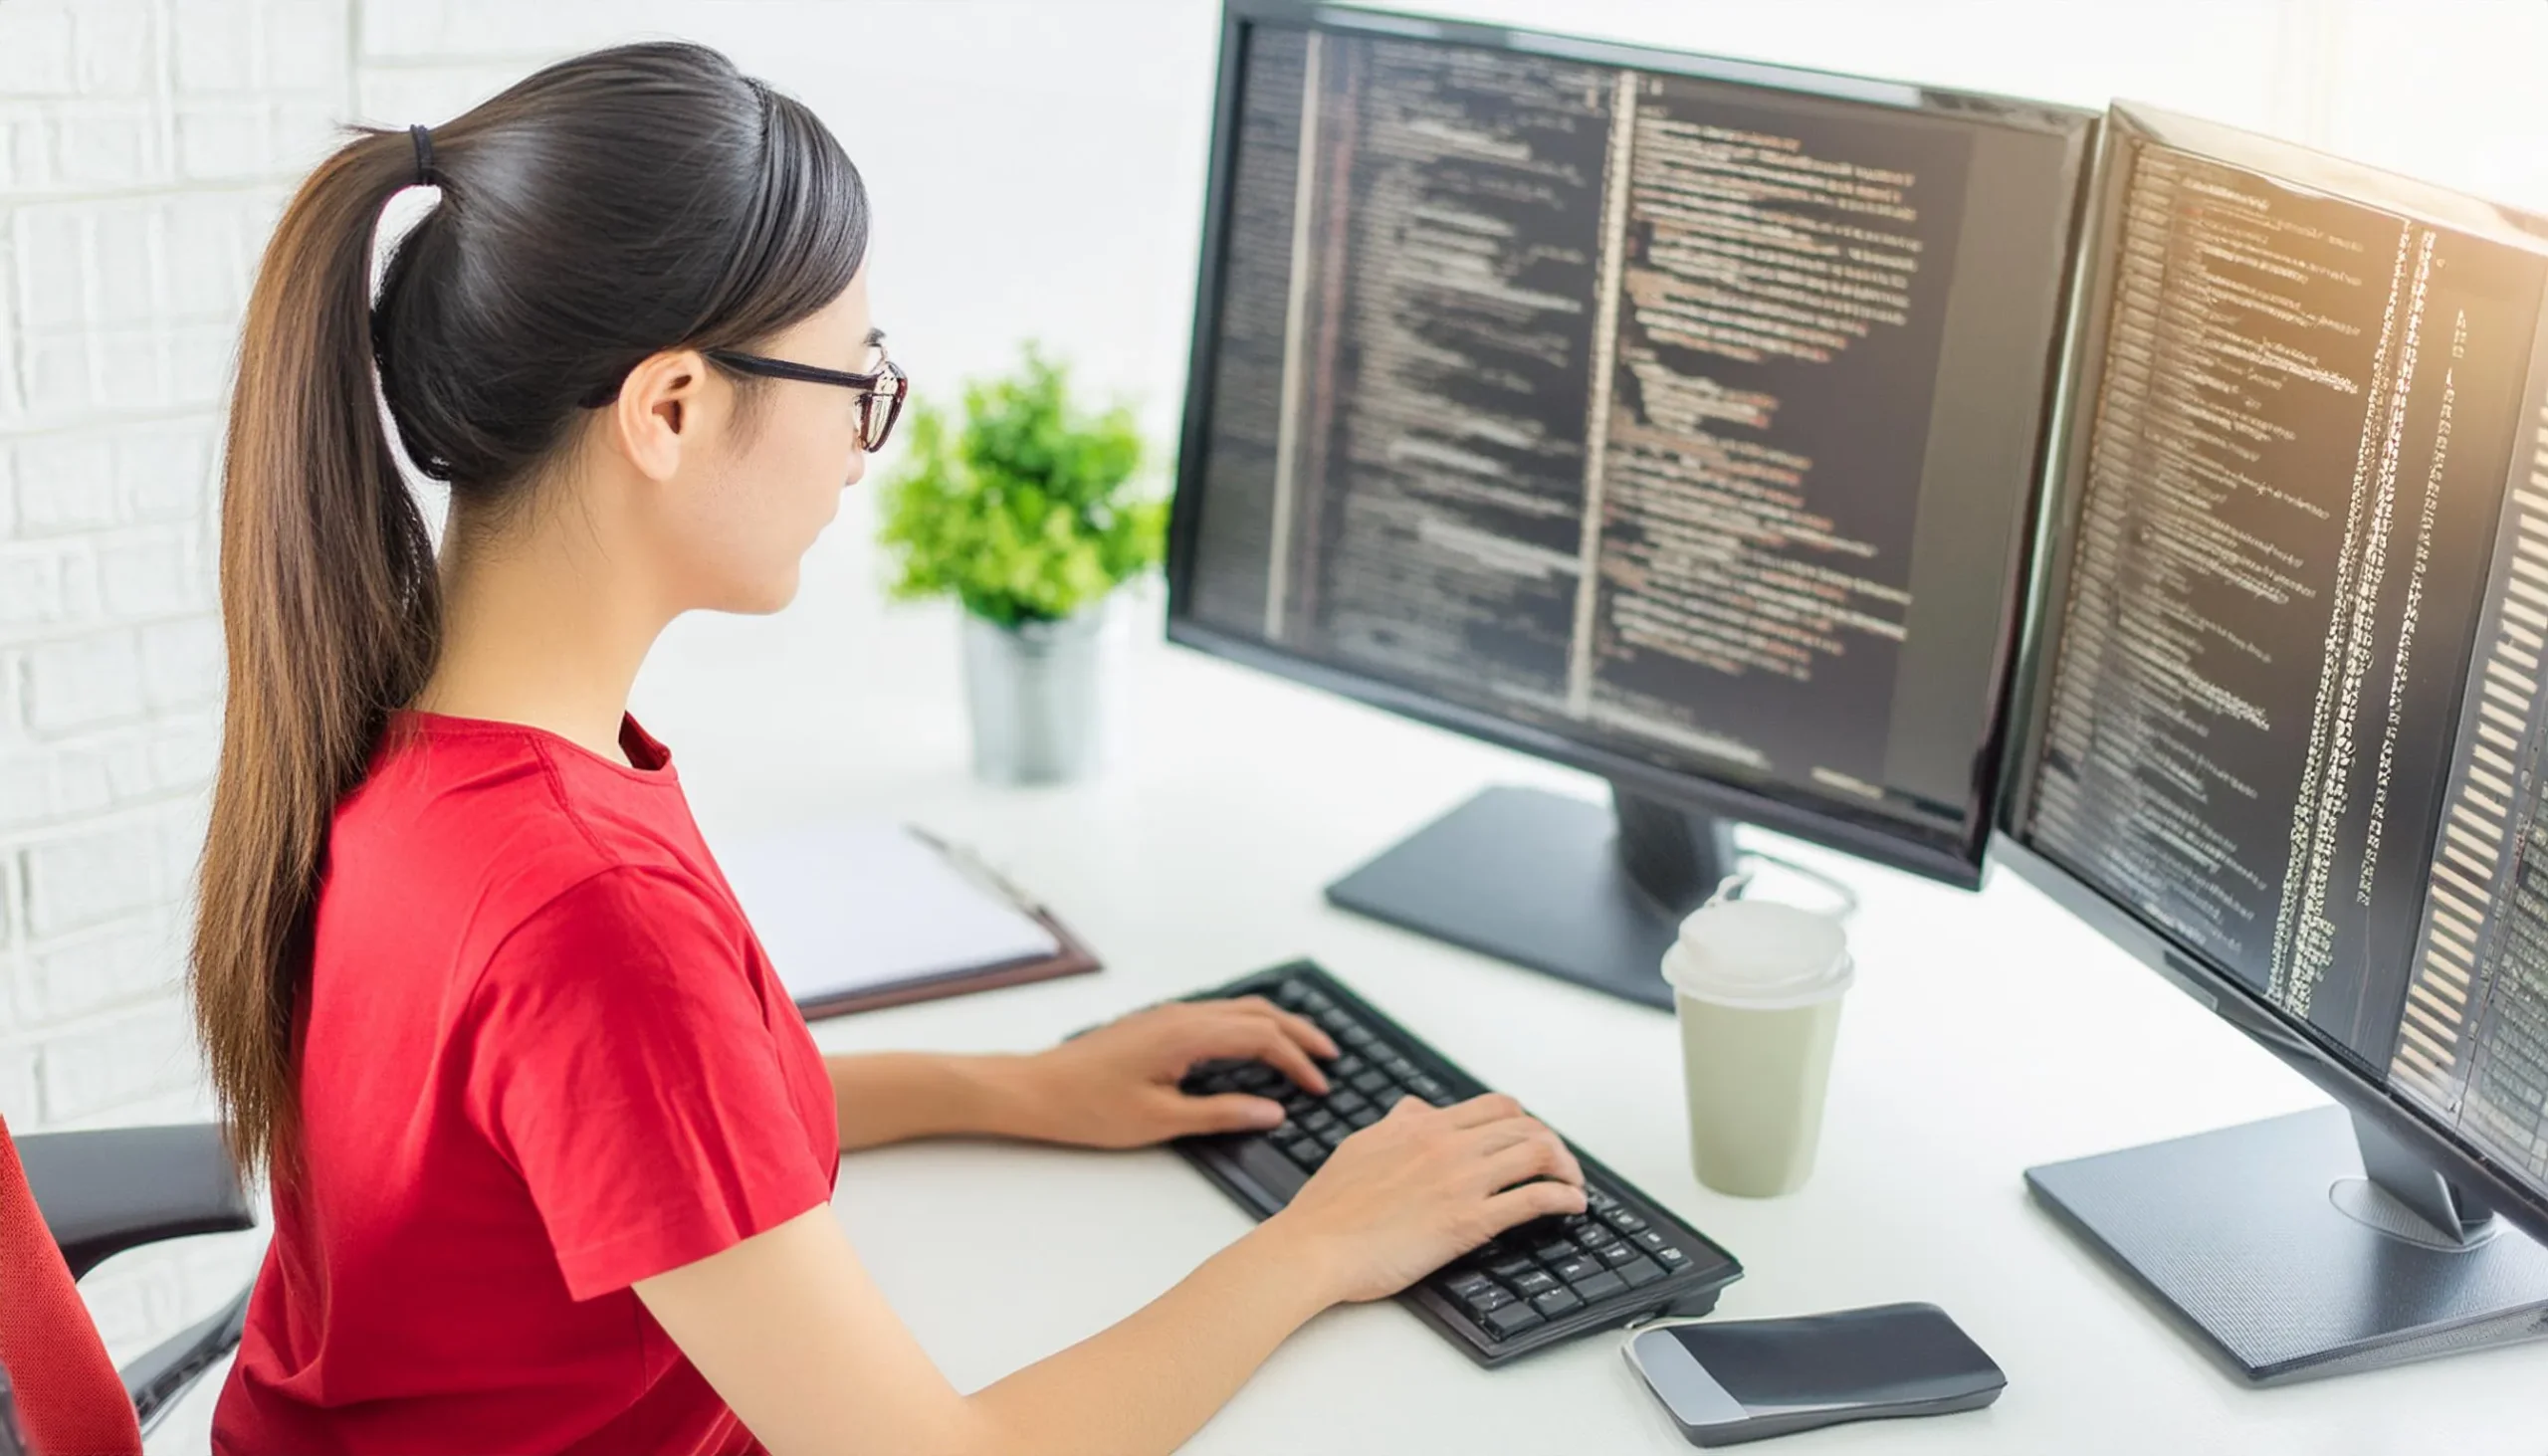 プログラミングをしている日本人の女性。赤いTシャツ。背景はプログラミングコード。横からの風景